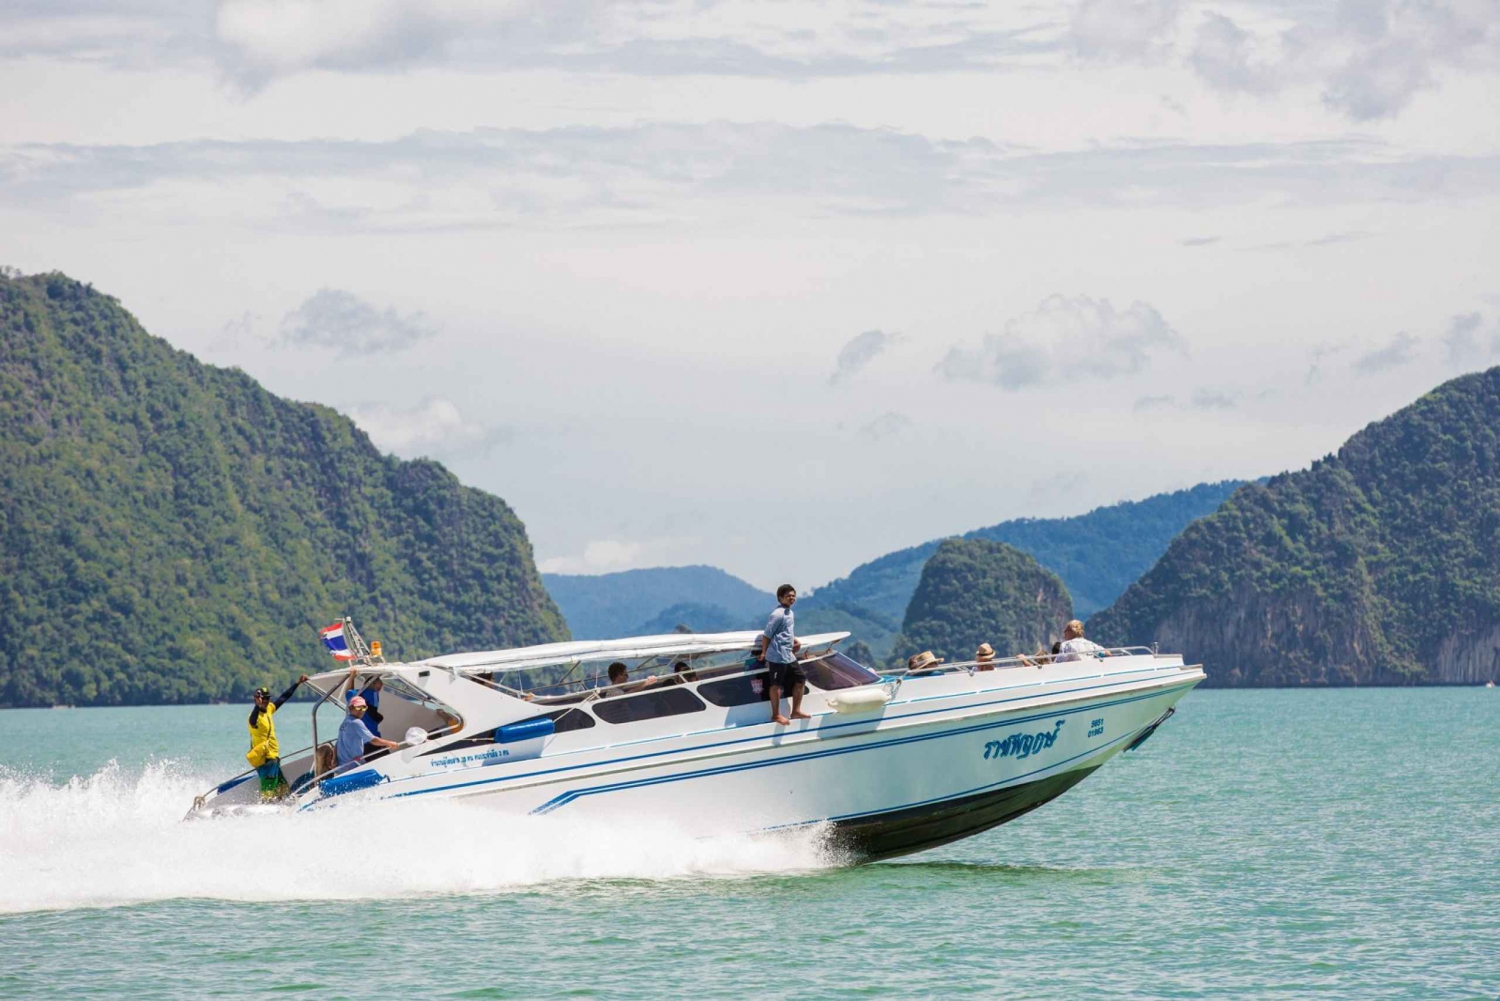 Phang Nga Bay: James Bond Island Kayak and Snorkeling Tour